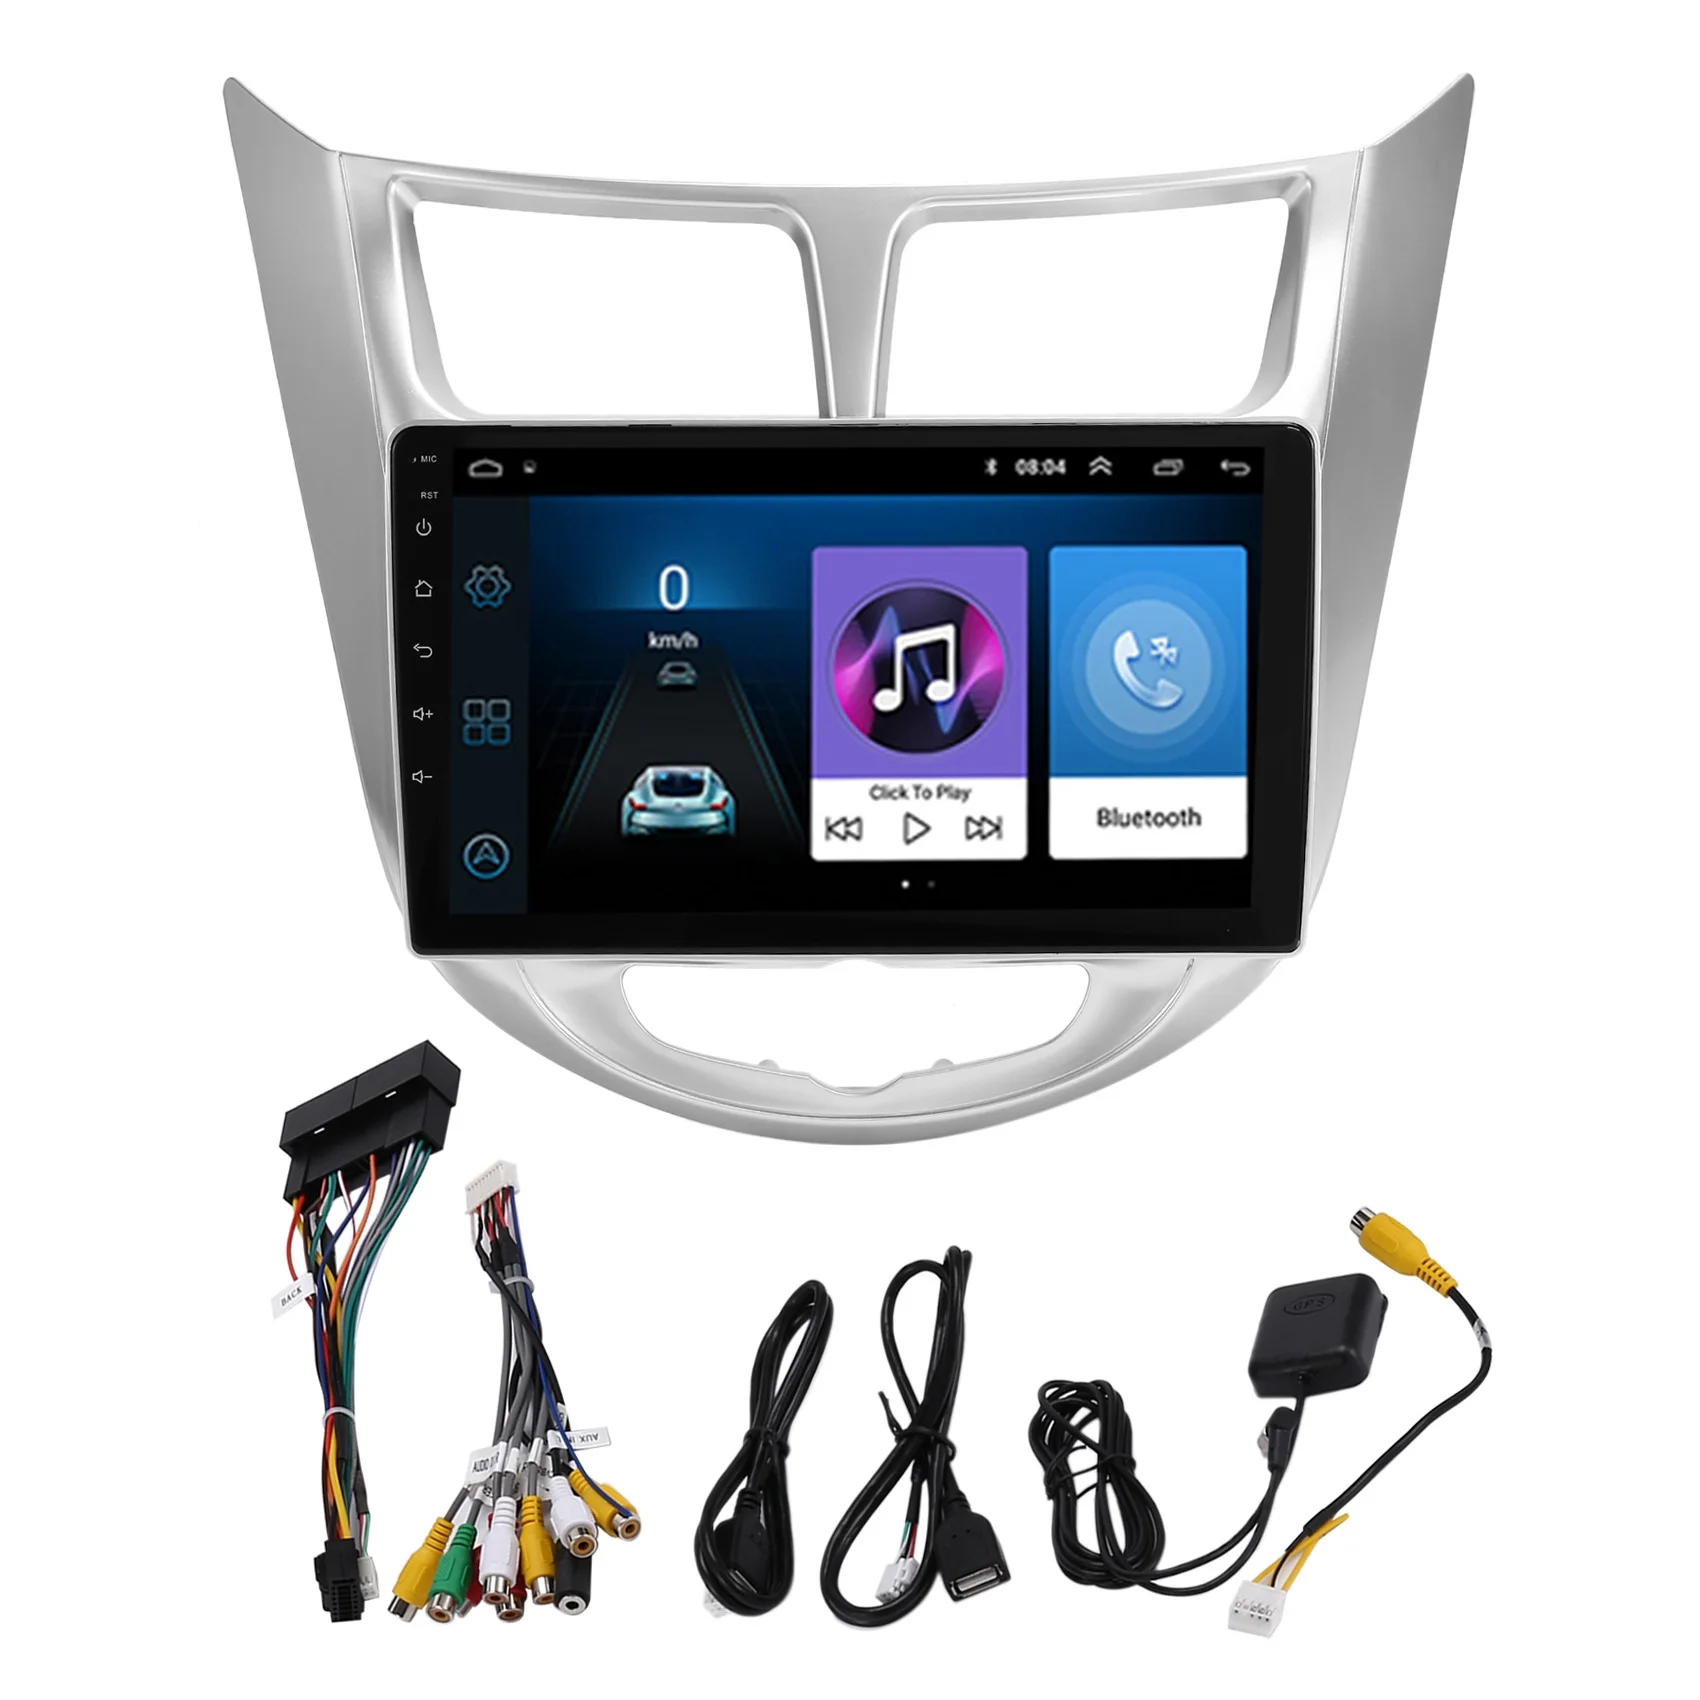 

Автомагнитола 2DIN, 1 Гб + 16 ГБ, Android 10, мультимедийный видеоплеер для Hyundai Solaris Verna Accent 2010 - 2016